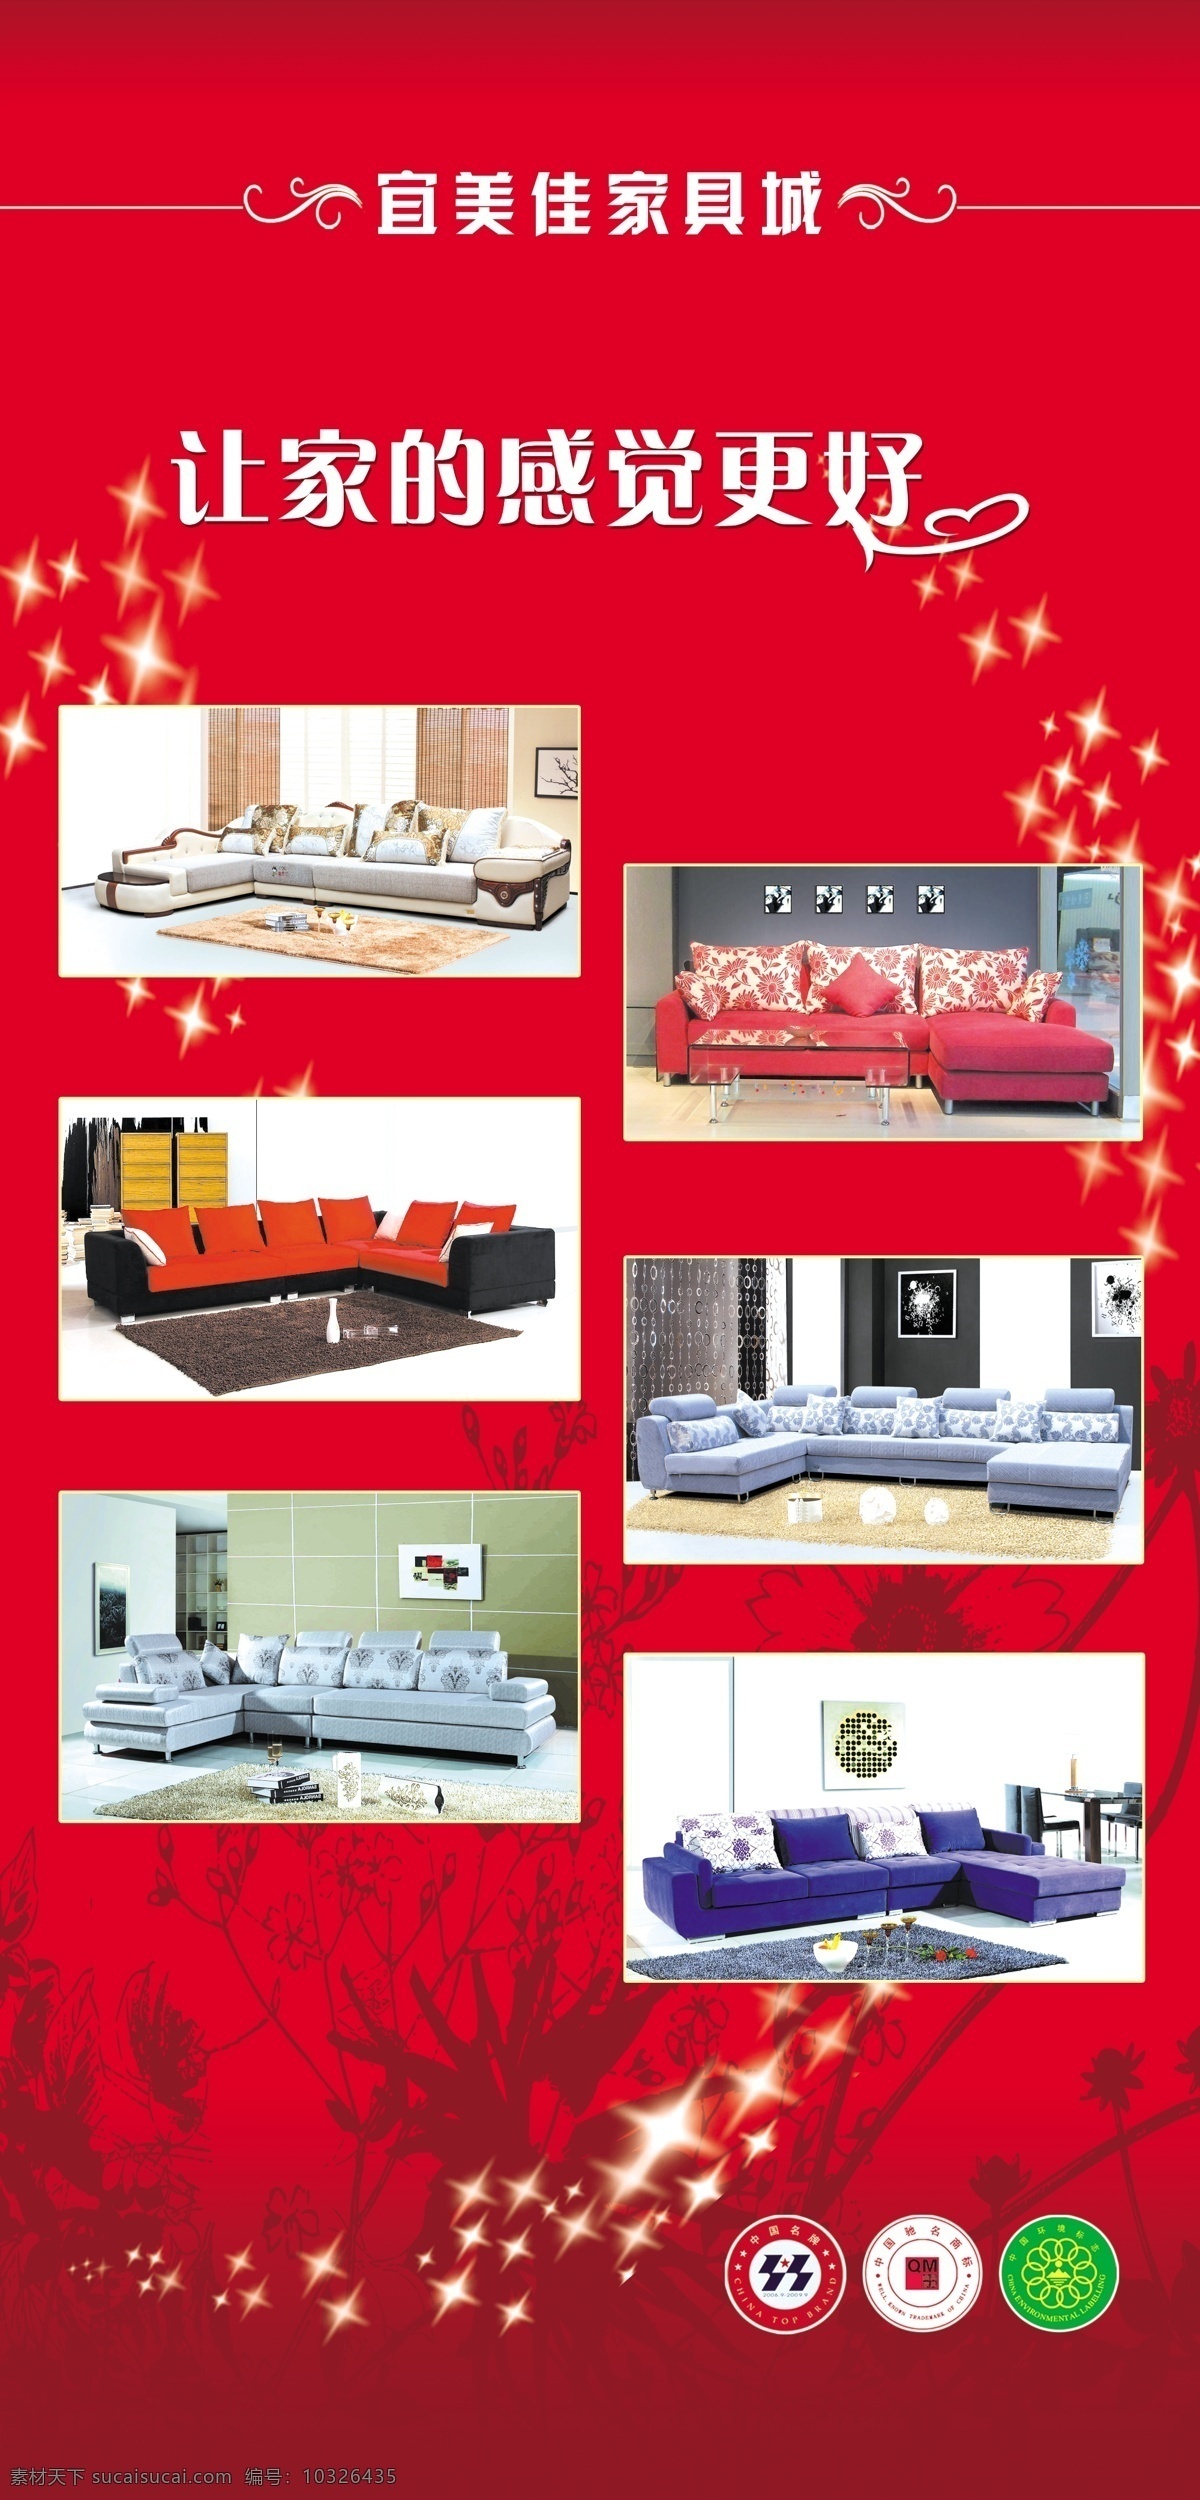 家具城广告 沙发 花纹 星星 墨迹 广告设计模板 源文件